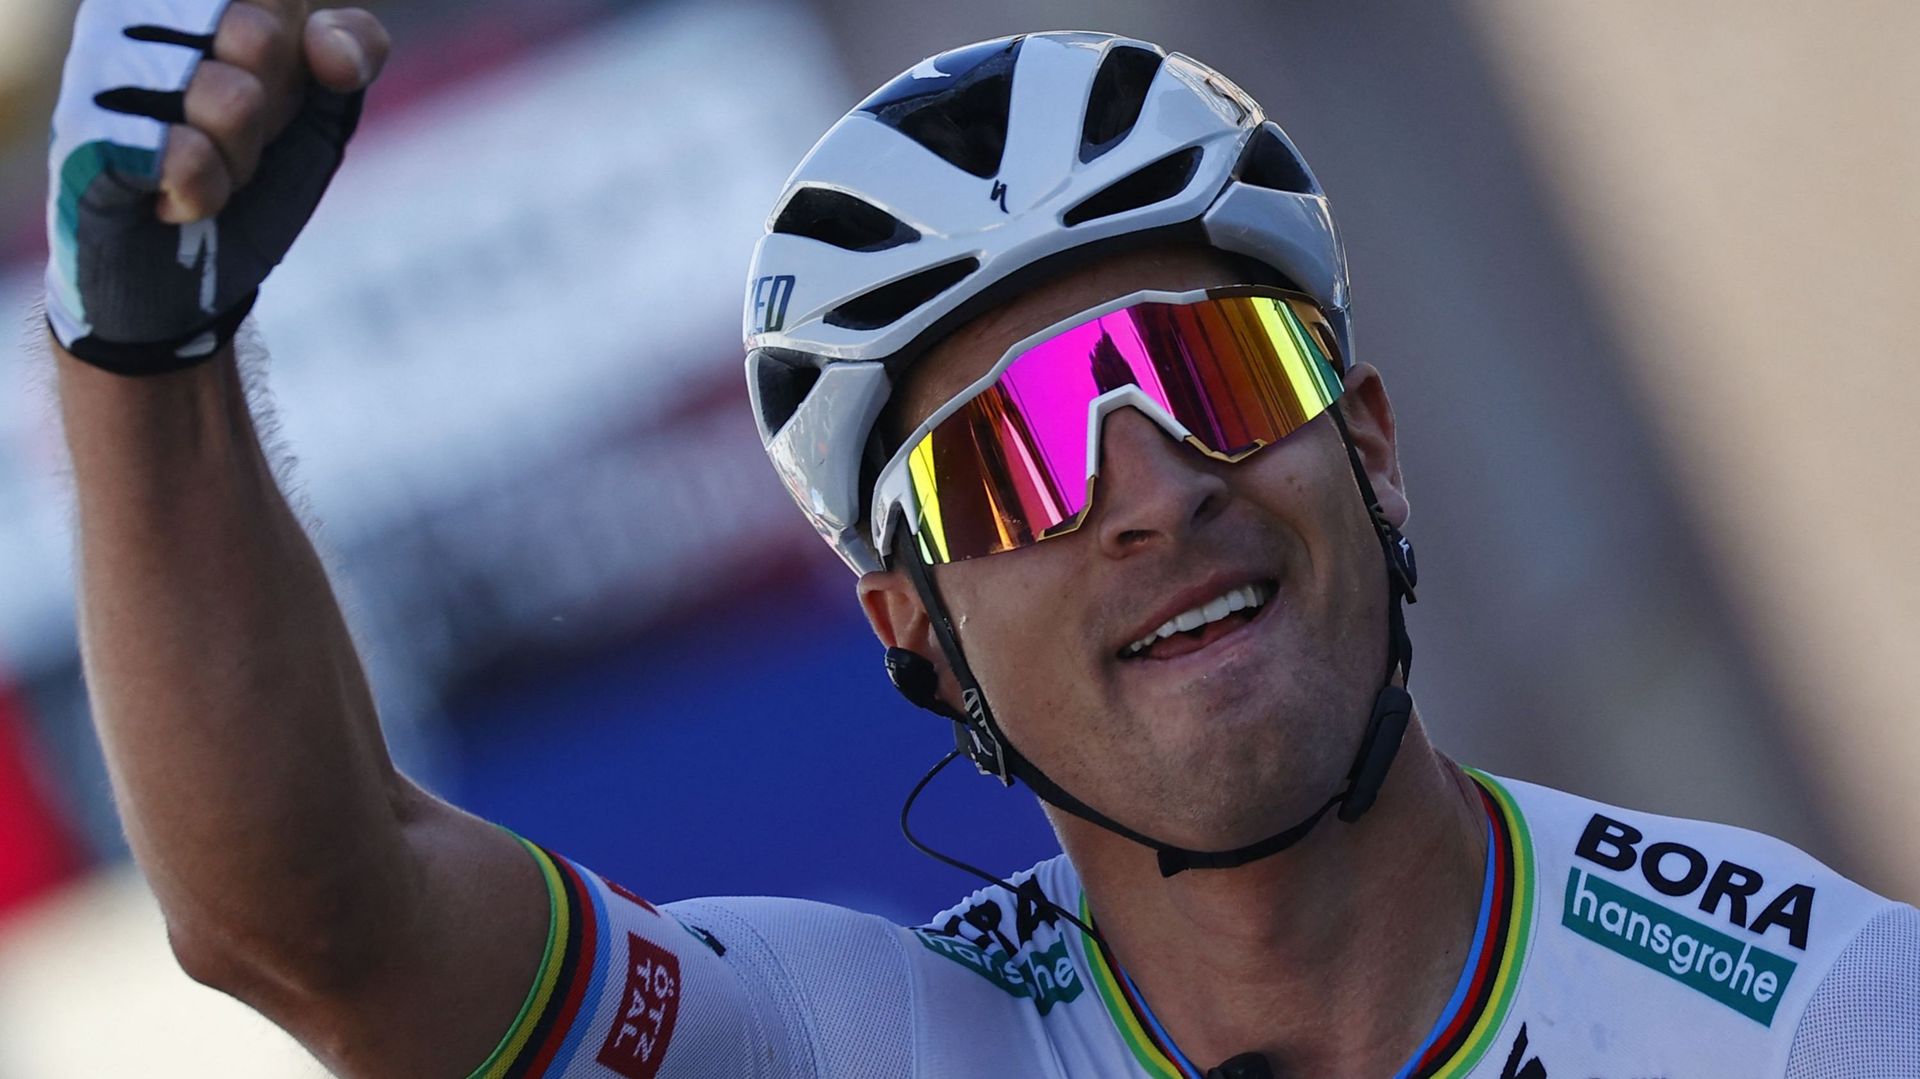 Giro : L’étape Sagan, Evenepoel reprend une seconde à Bernal : les classements après la 10e étape